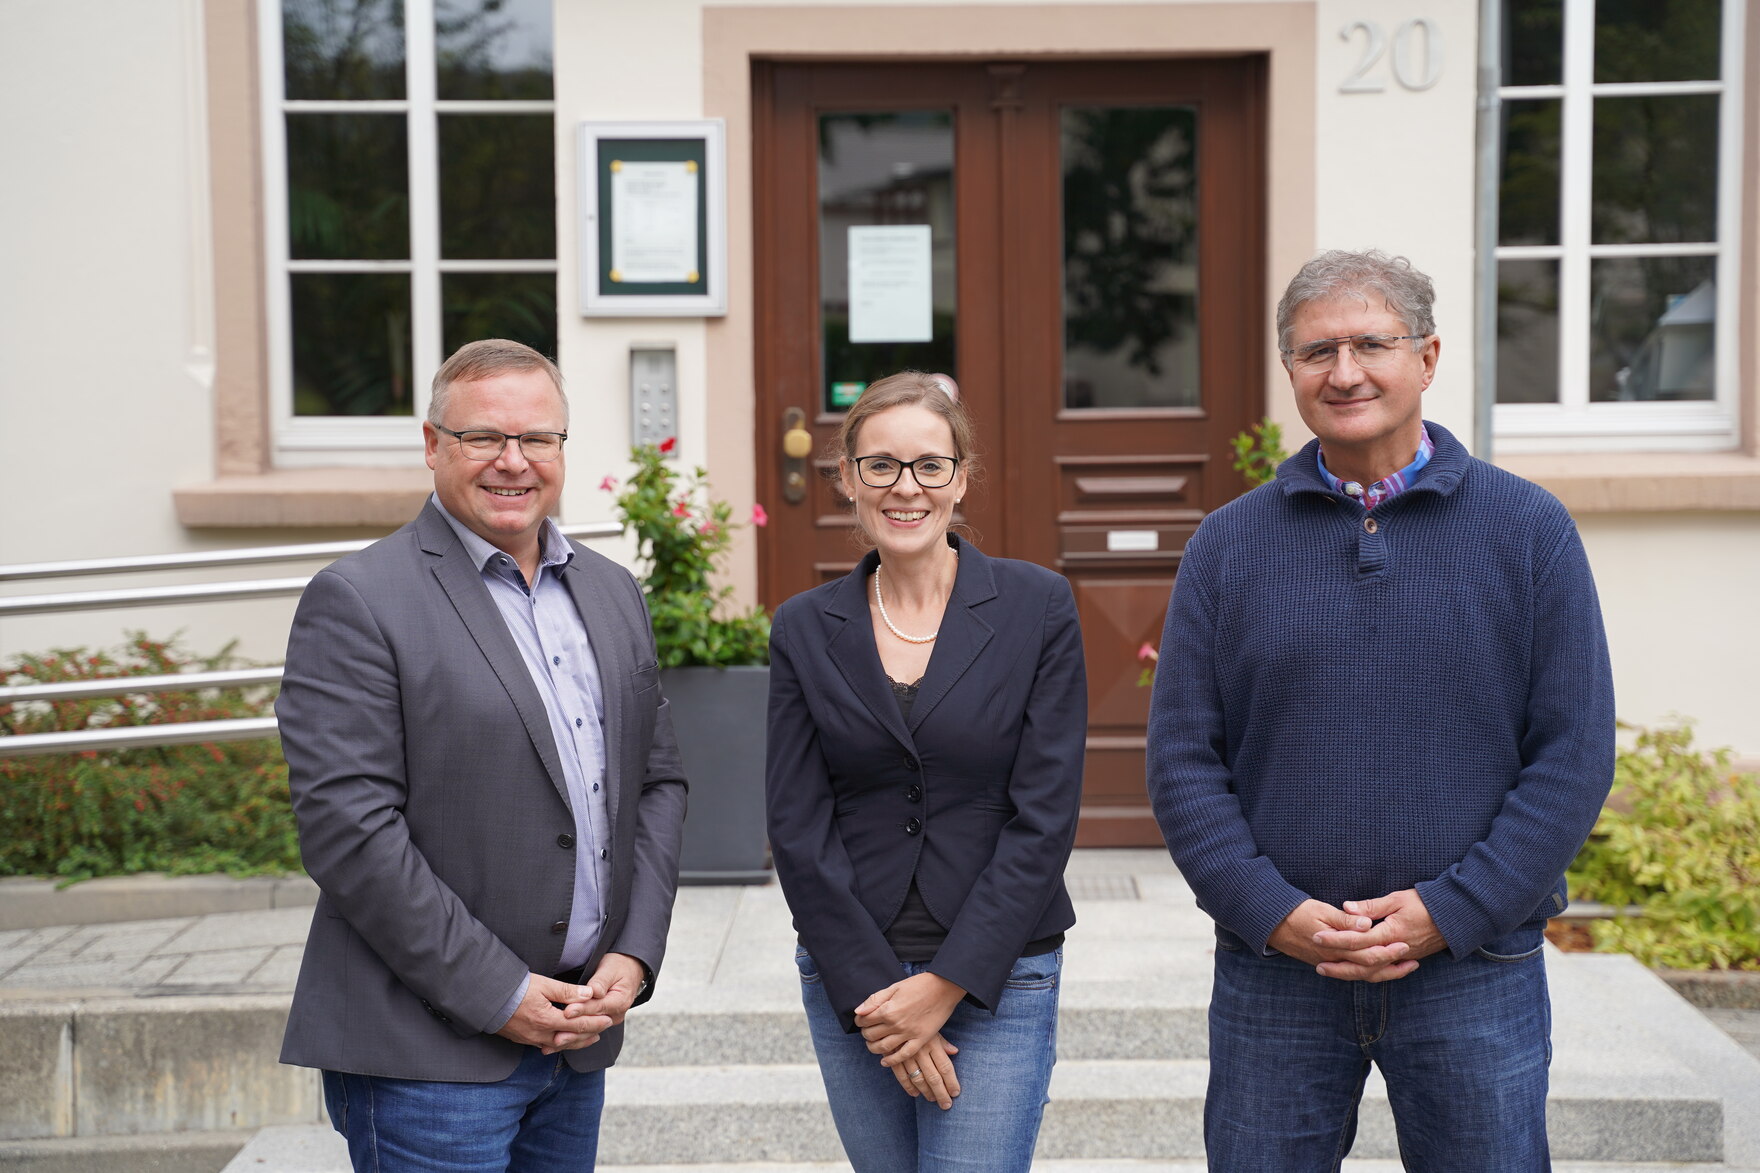 Staatssekretär Prof. Popp zu Besuch in Neukirch